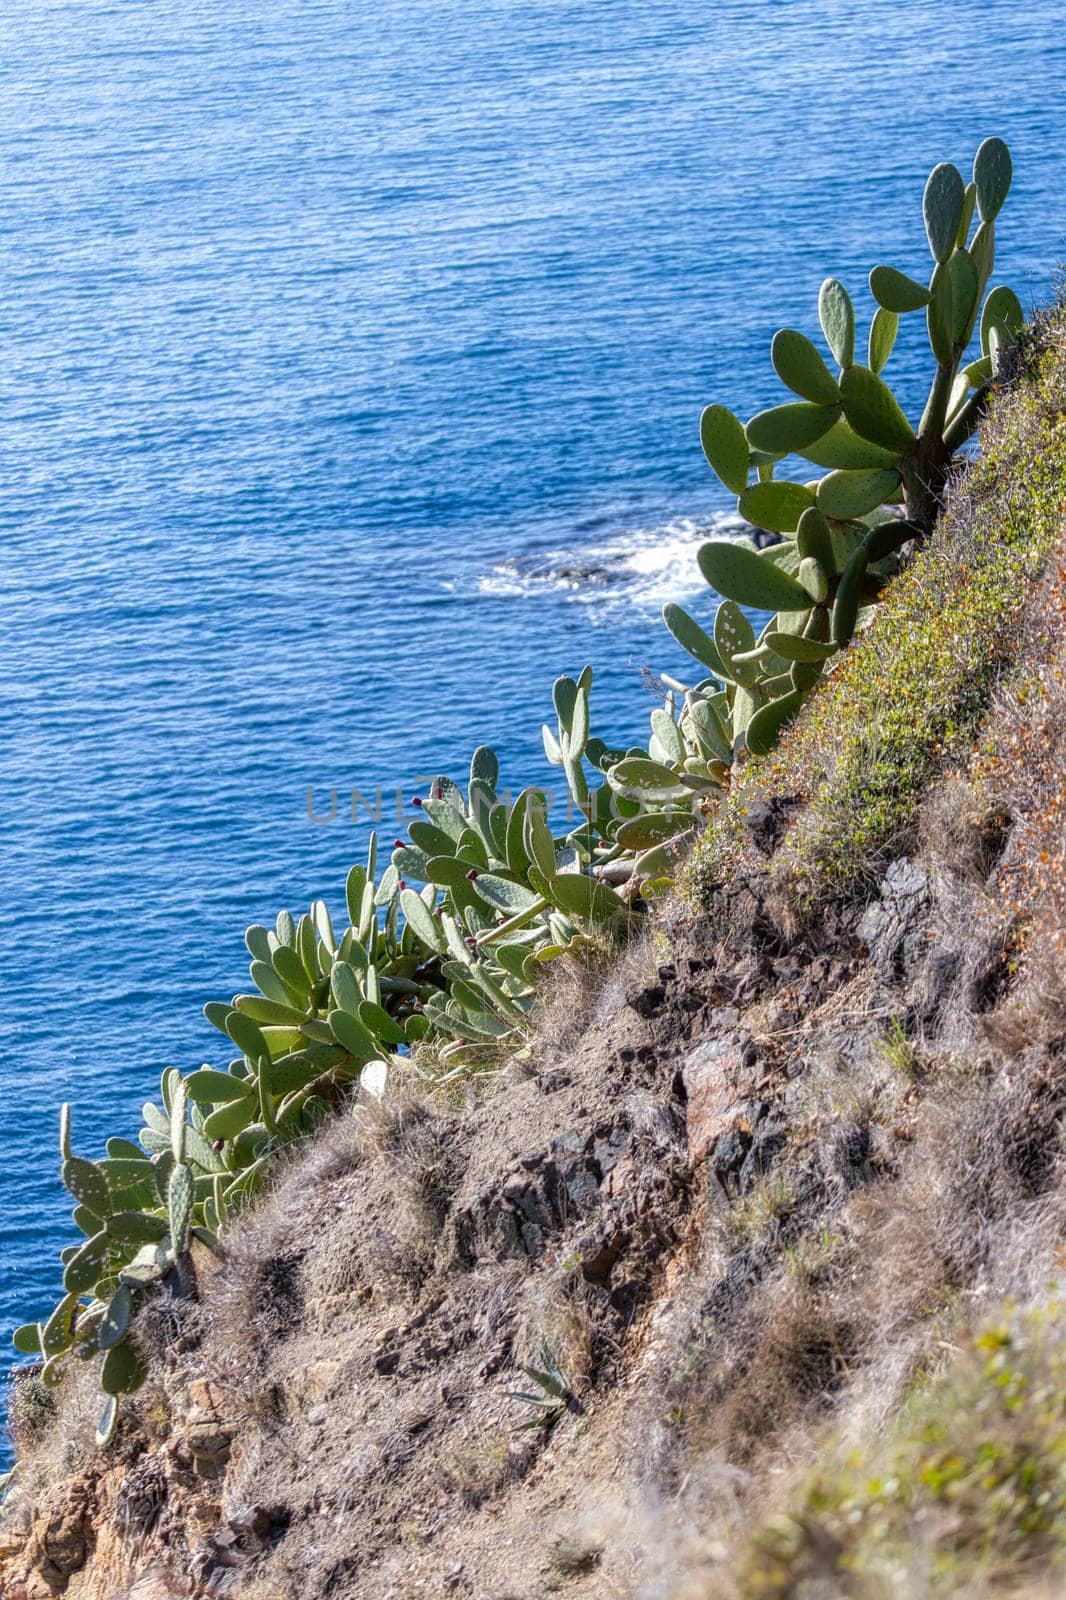 Green cactus plants in Spanish coastal in Costa Brava in spring by Digoarpi